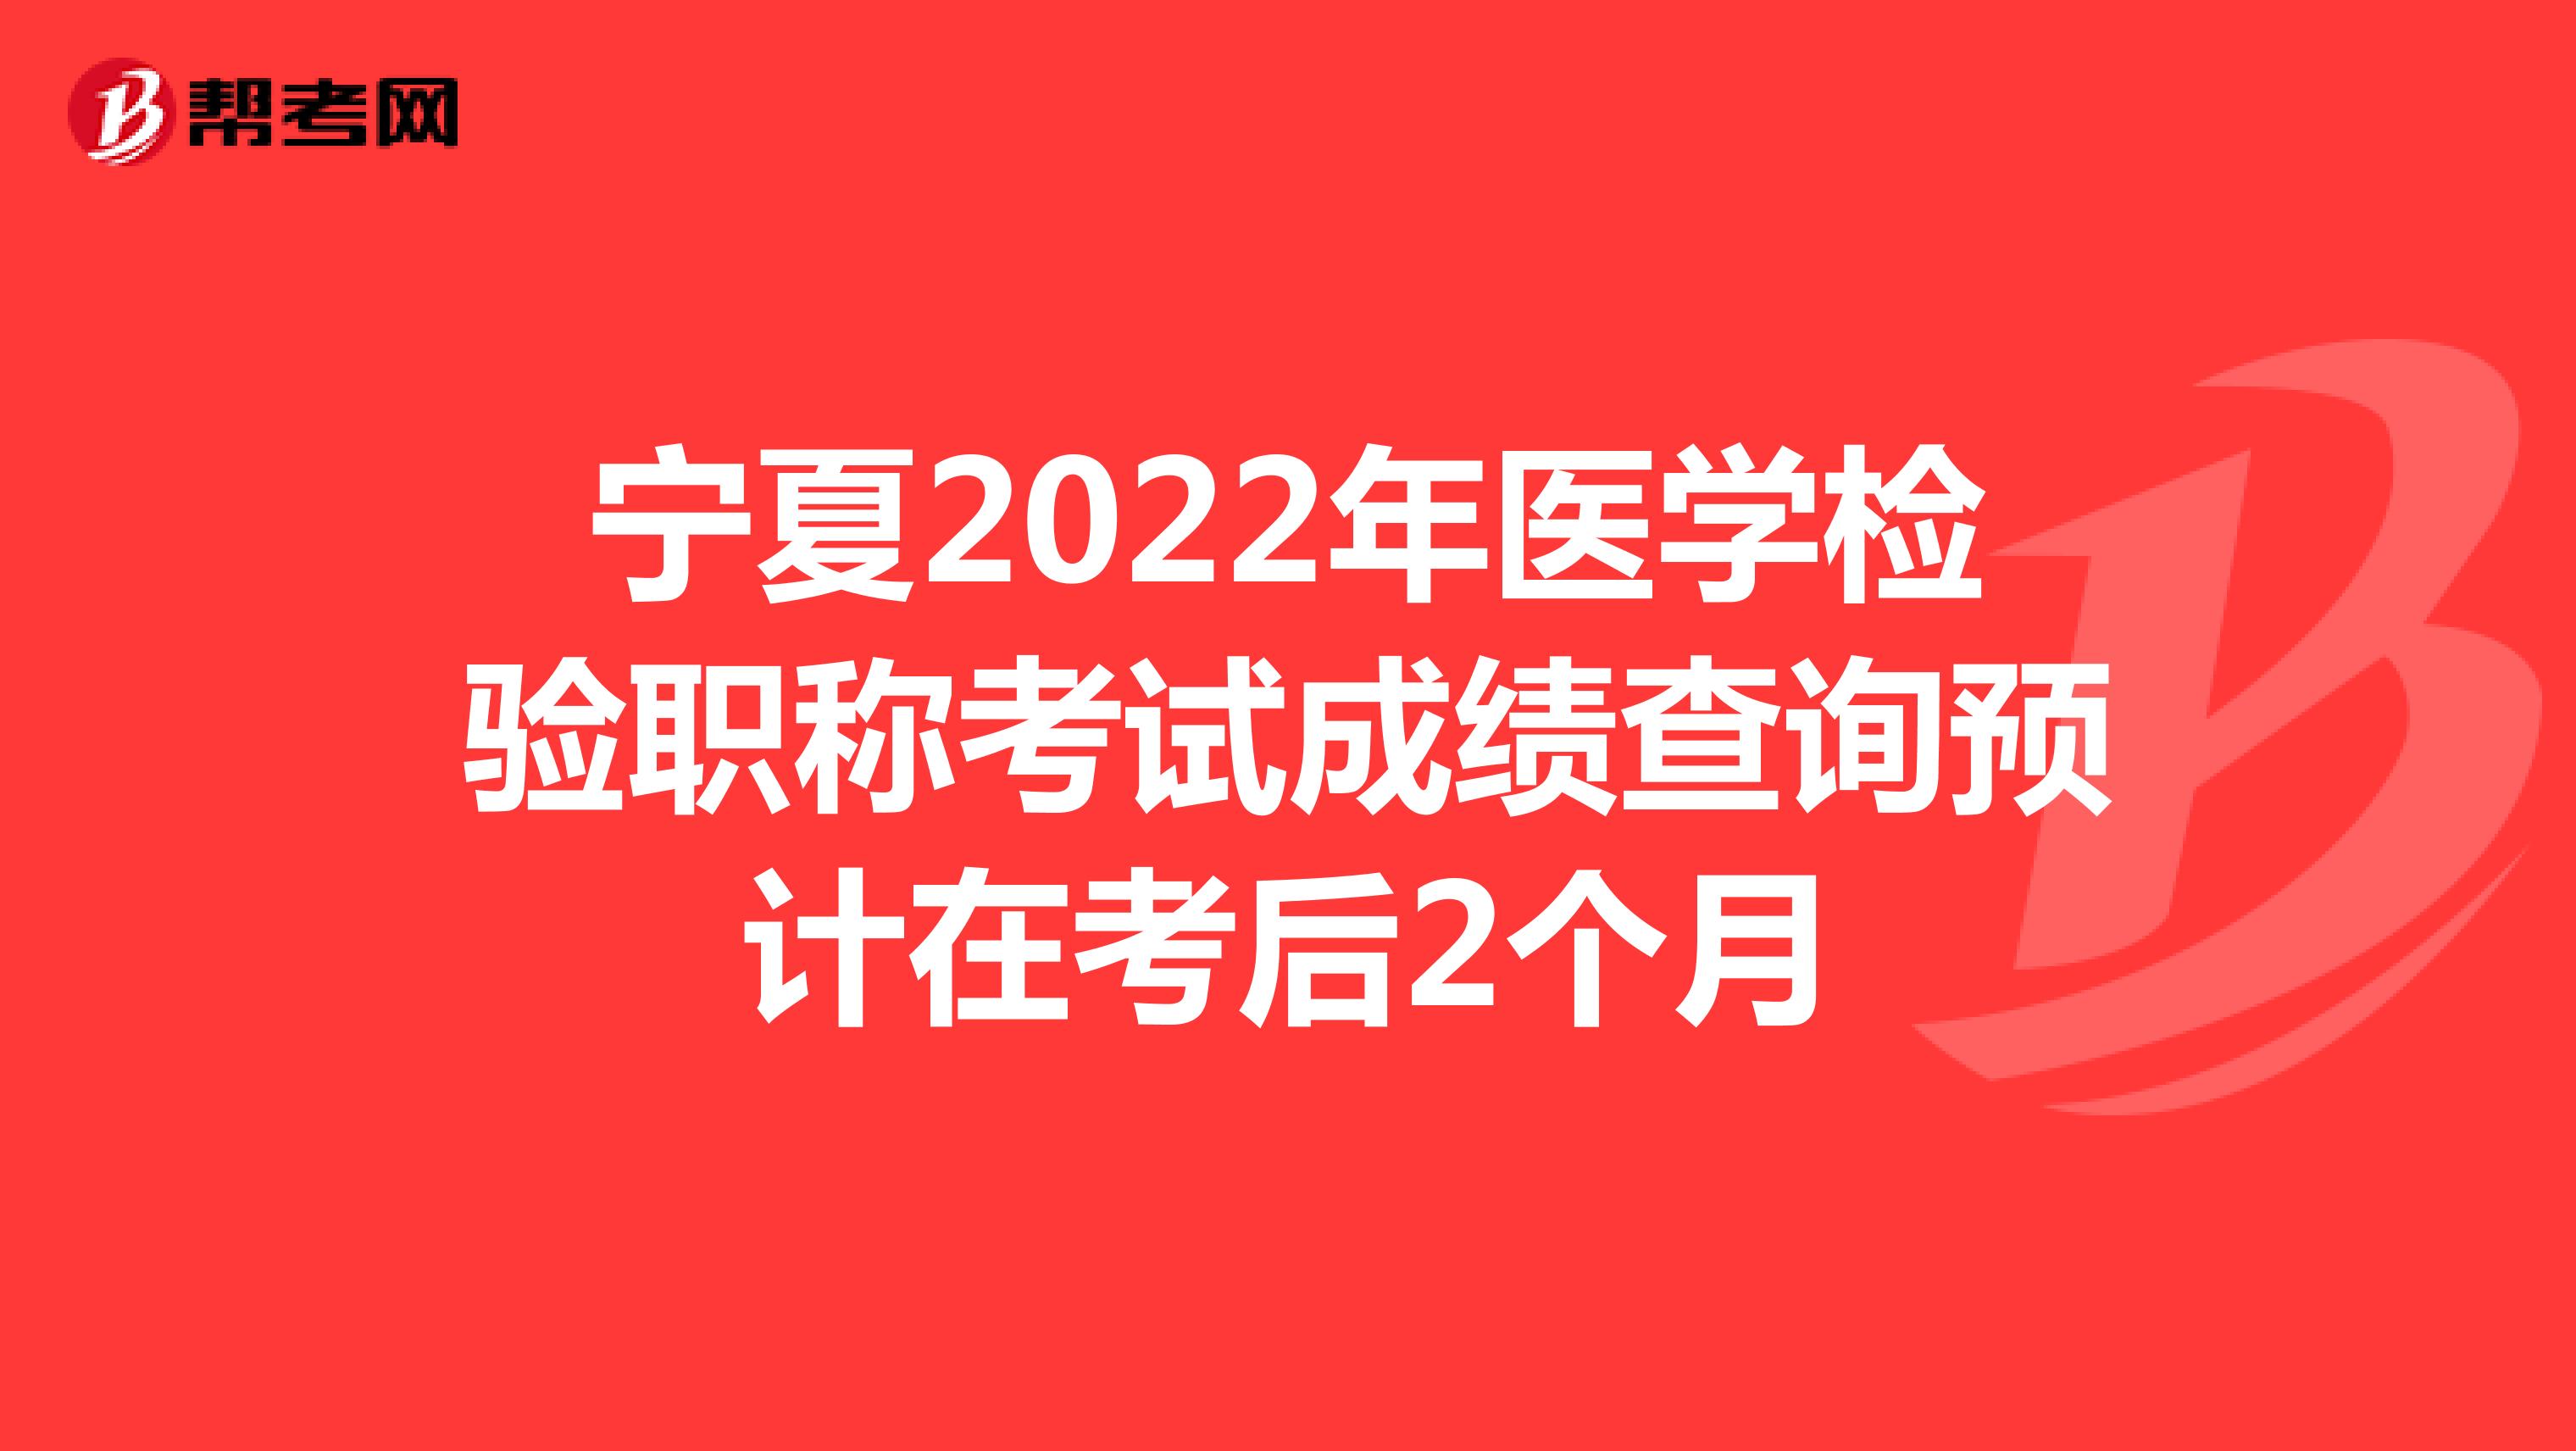 宁夏2022年医学检验职称考试成绩查询预计在考后2个月